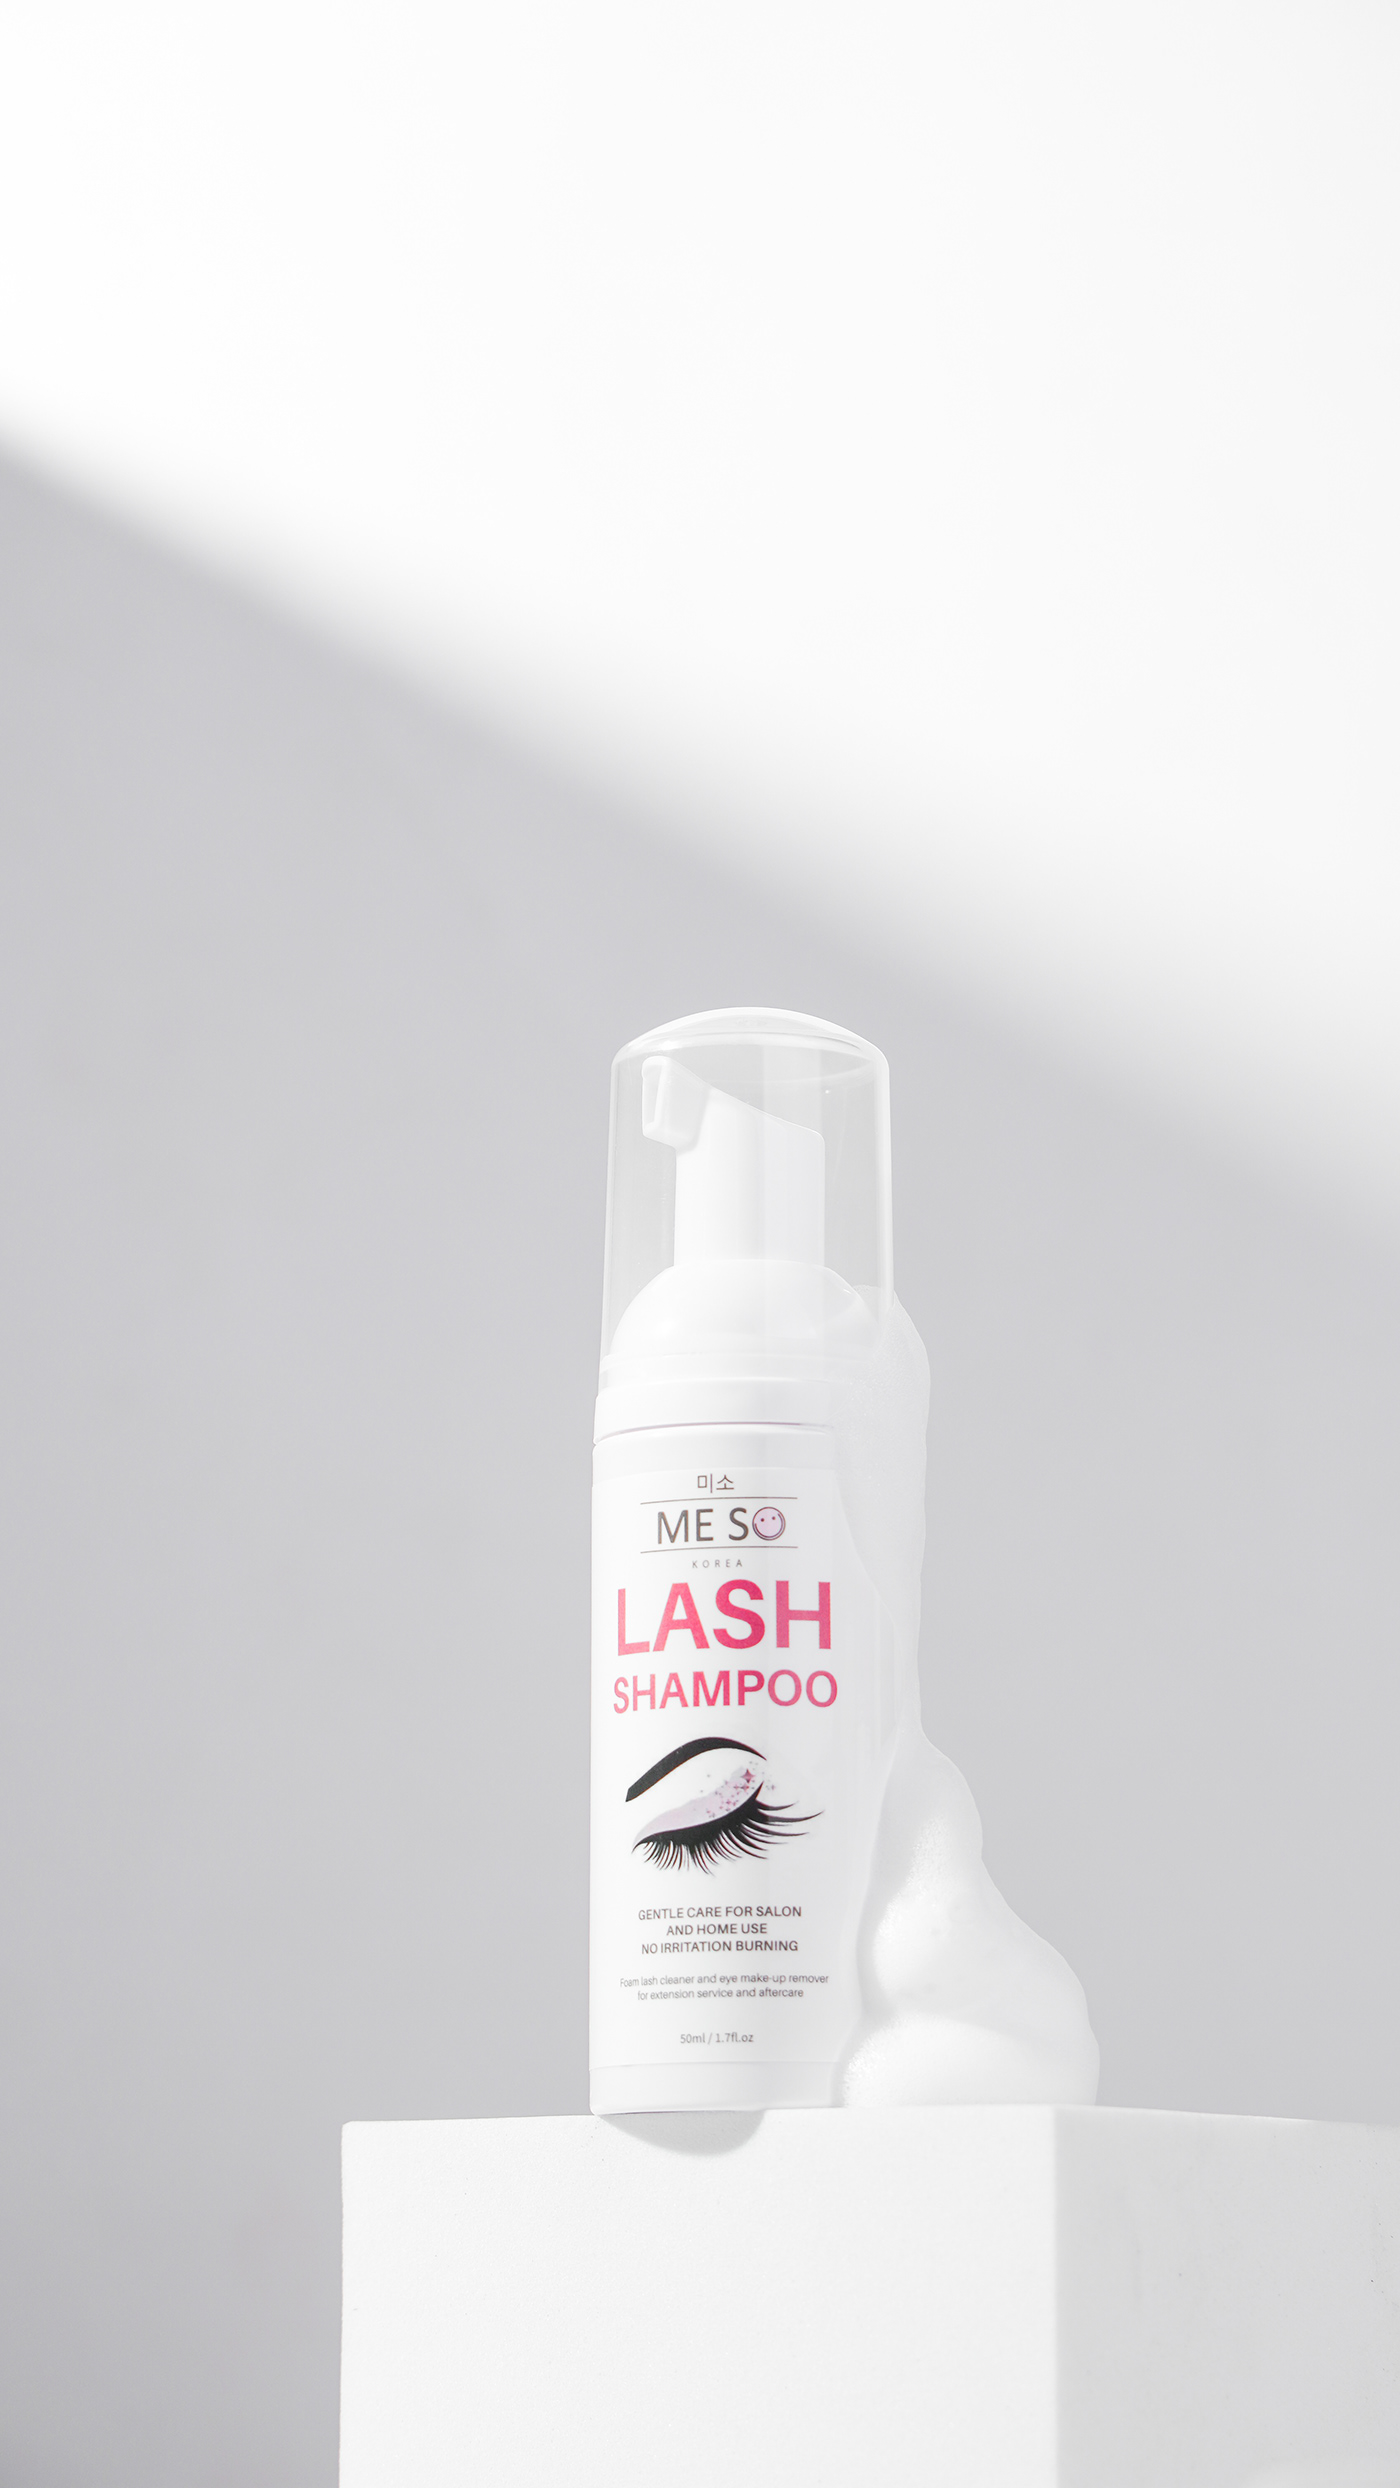 beauty eyelash Packshot photographer Photography  photoshoot product shampoo woman